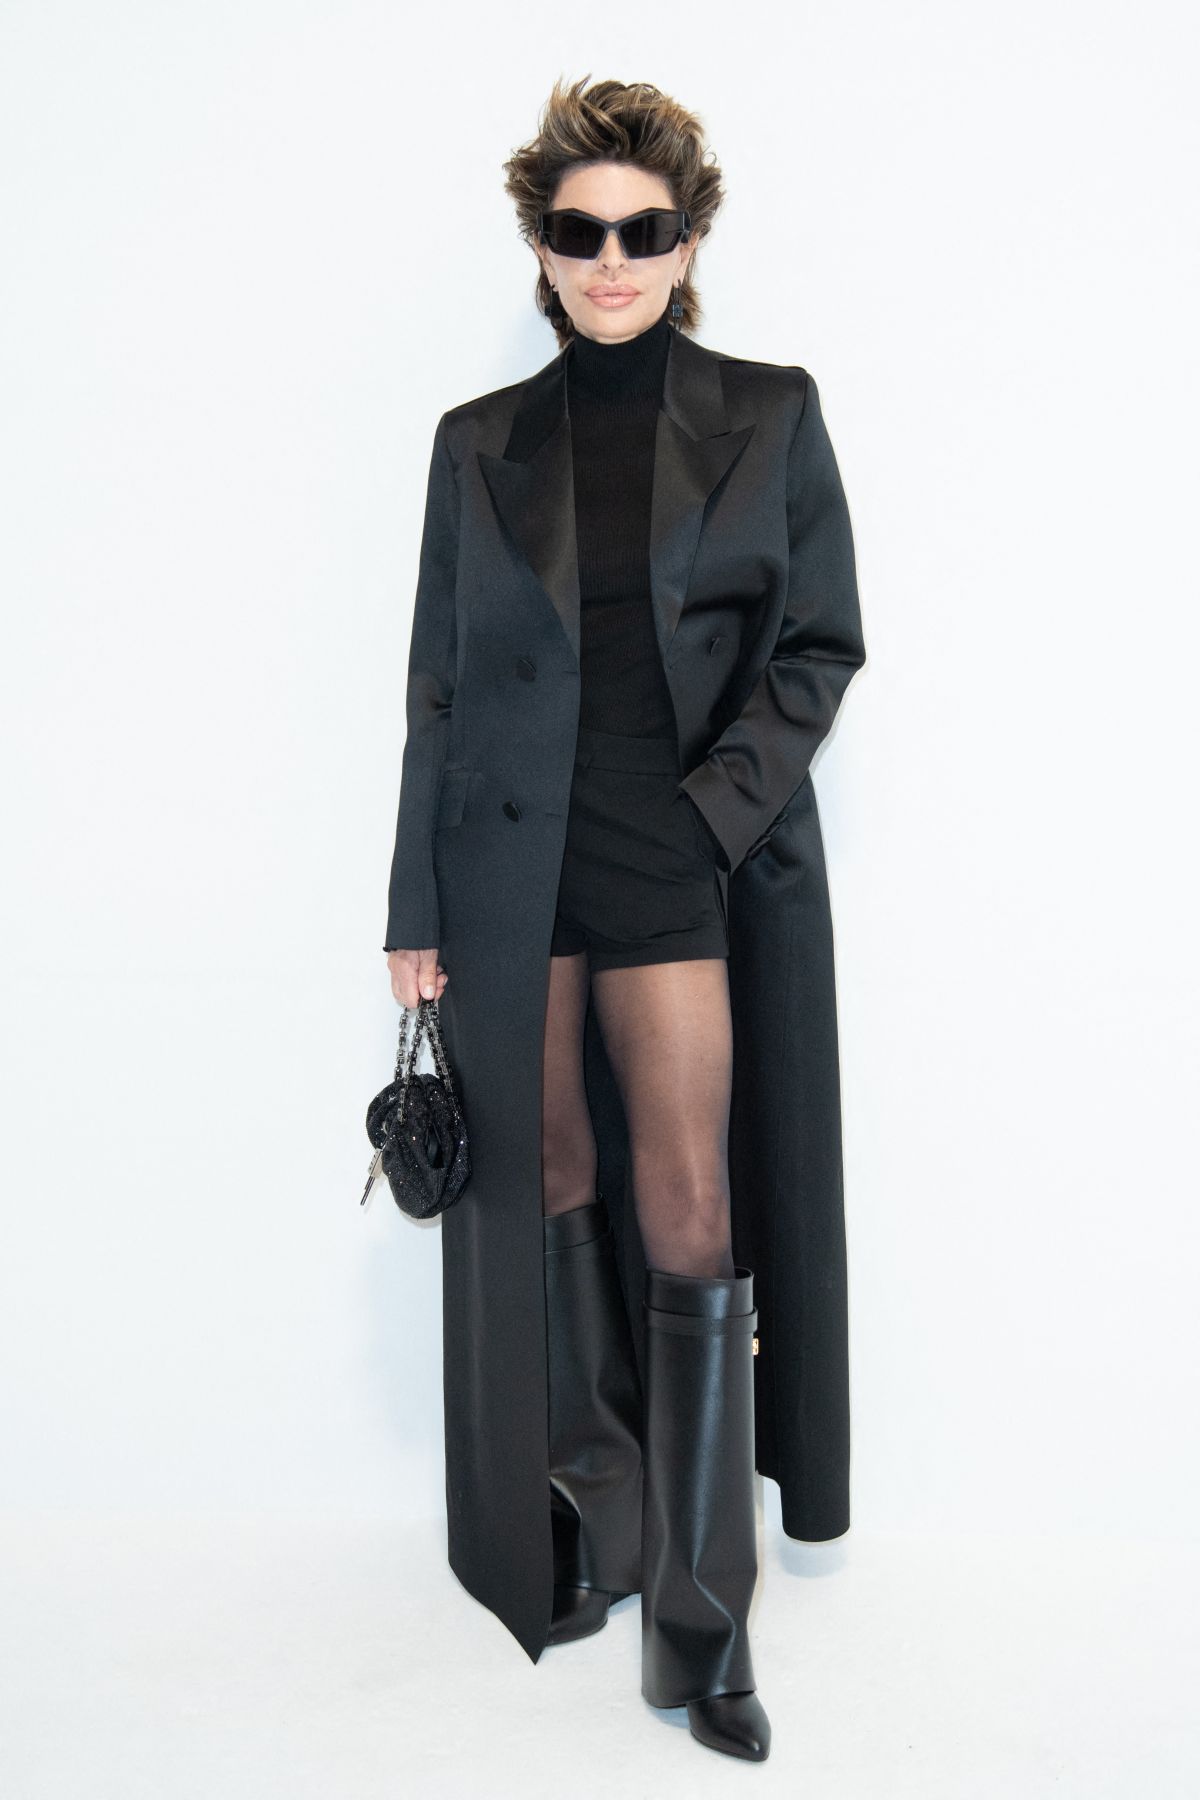 LISA RINNA at Givenchy Womenswear Fall/Winter 20232024 Show at Paris